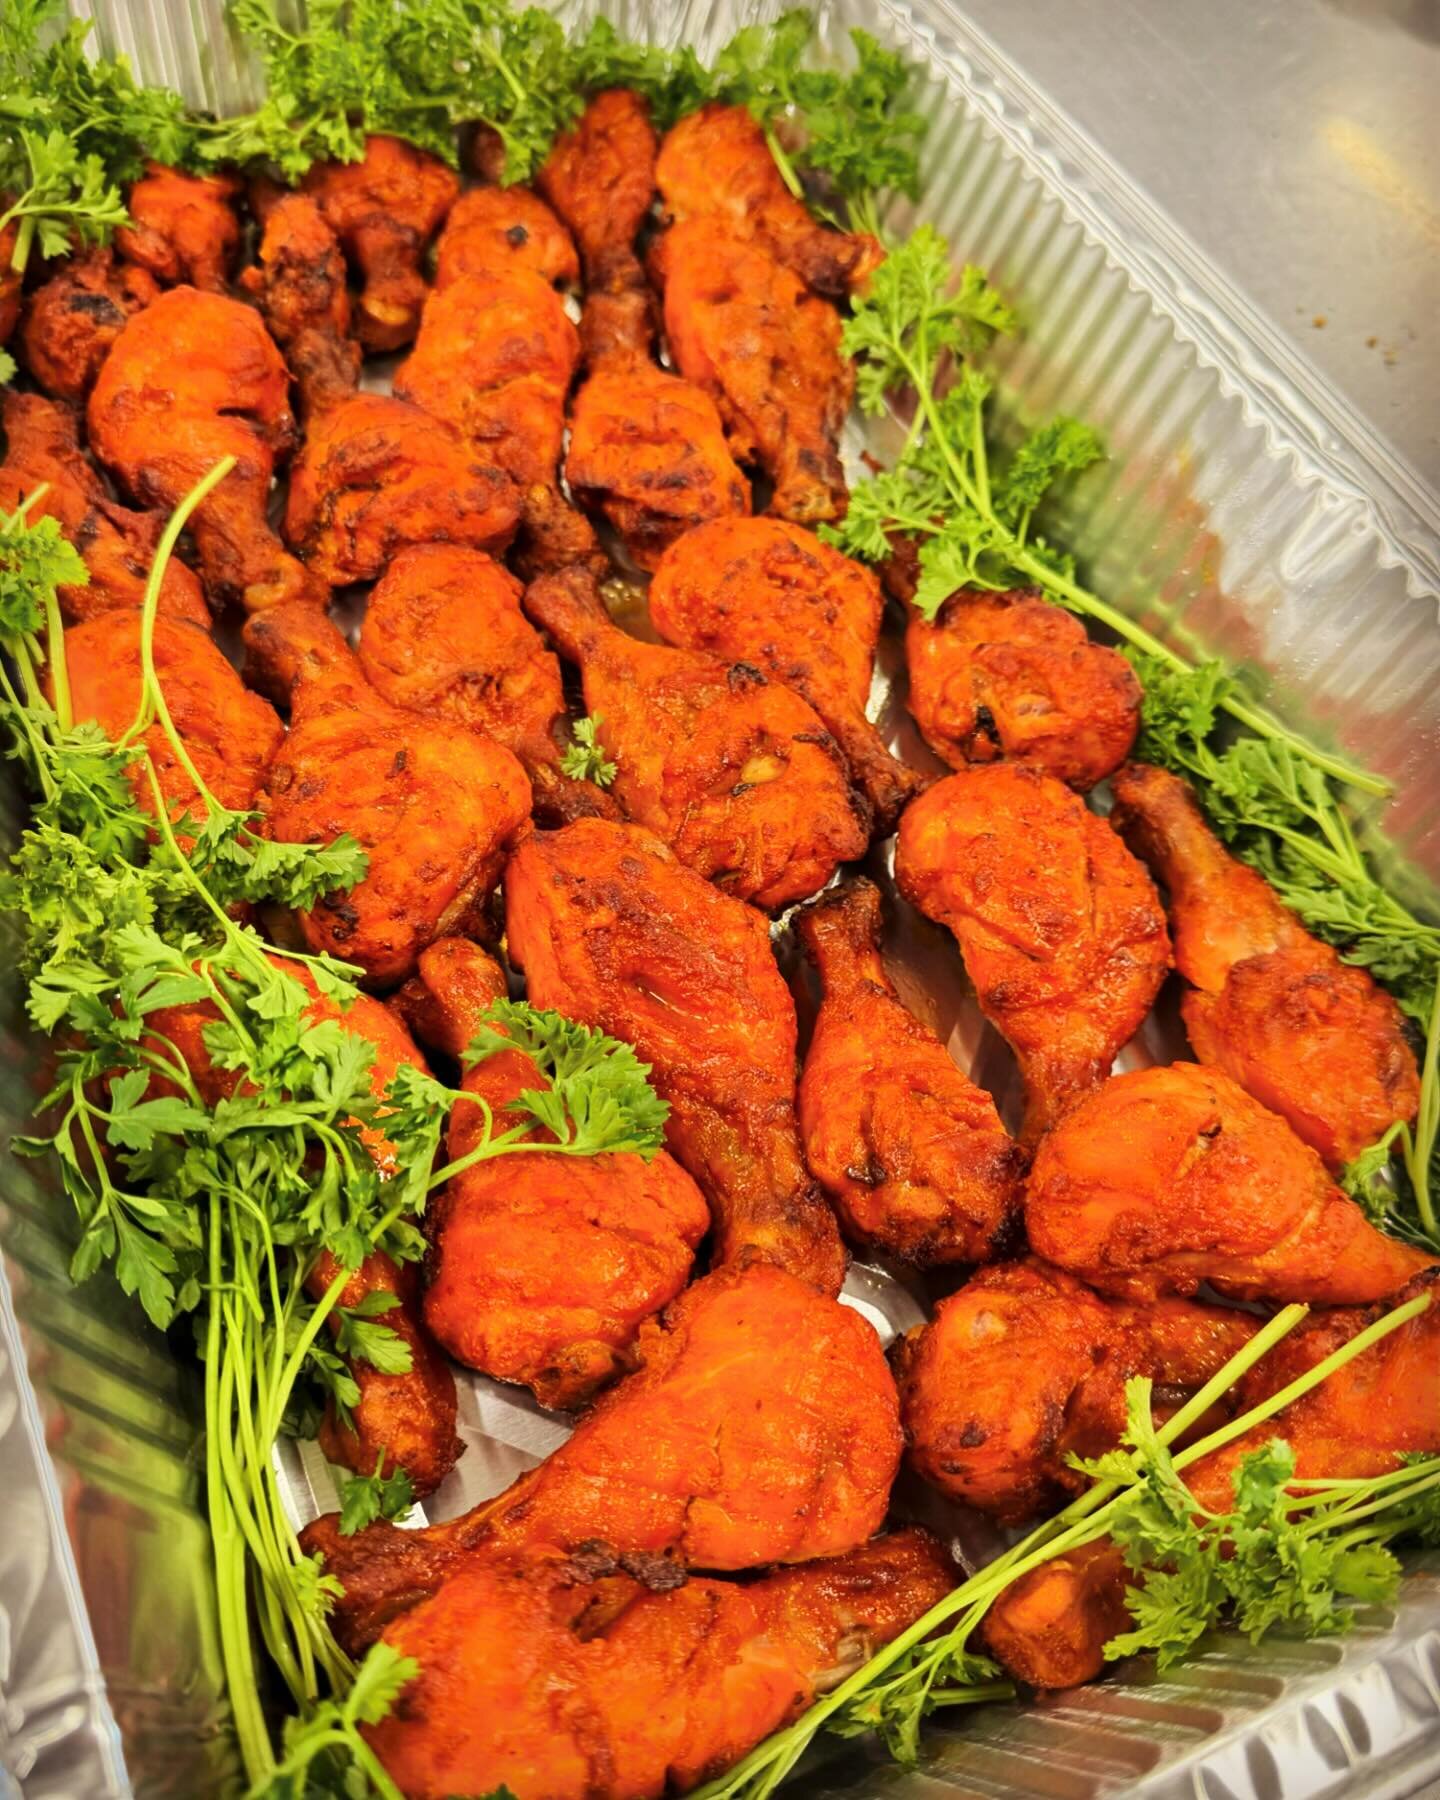 Tandoori Chicken Drumsticks featured on Mirchaa&rsquo;s Iftaar Platter. Delivered fresh to your door. Get started at mirchaa.com/holidays

#mirchaamagic #iftaar